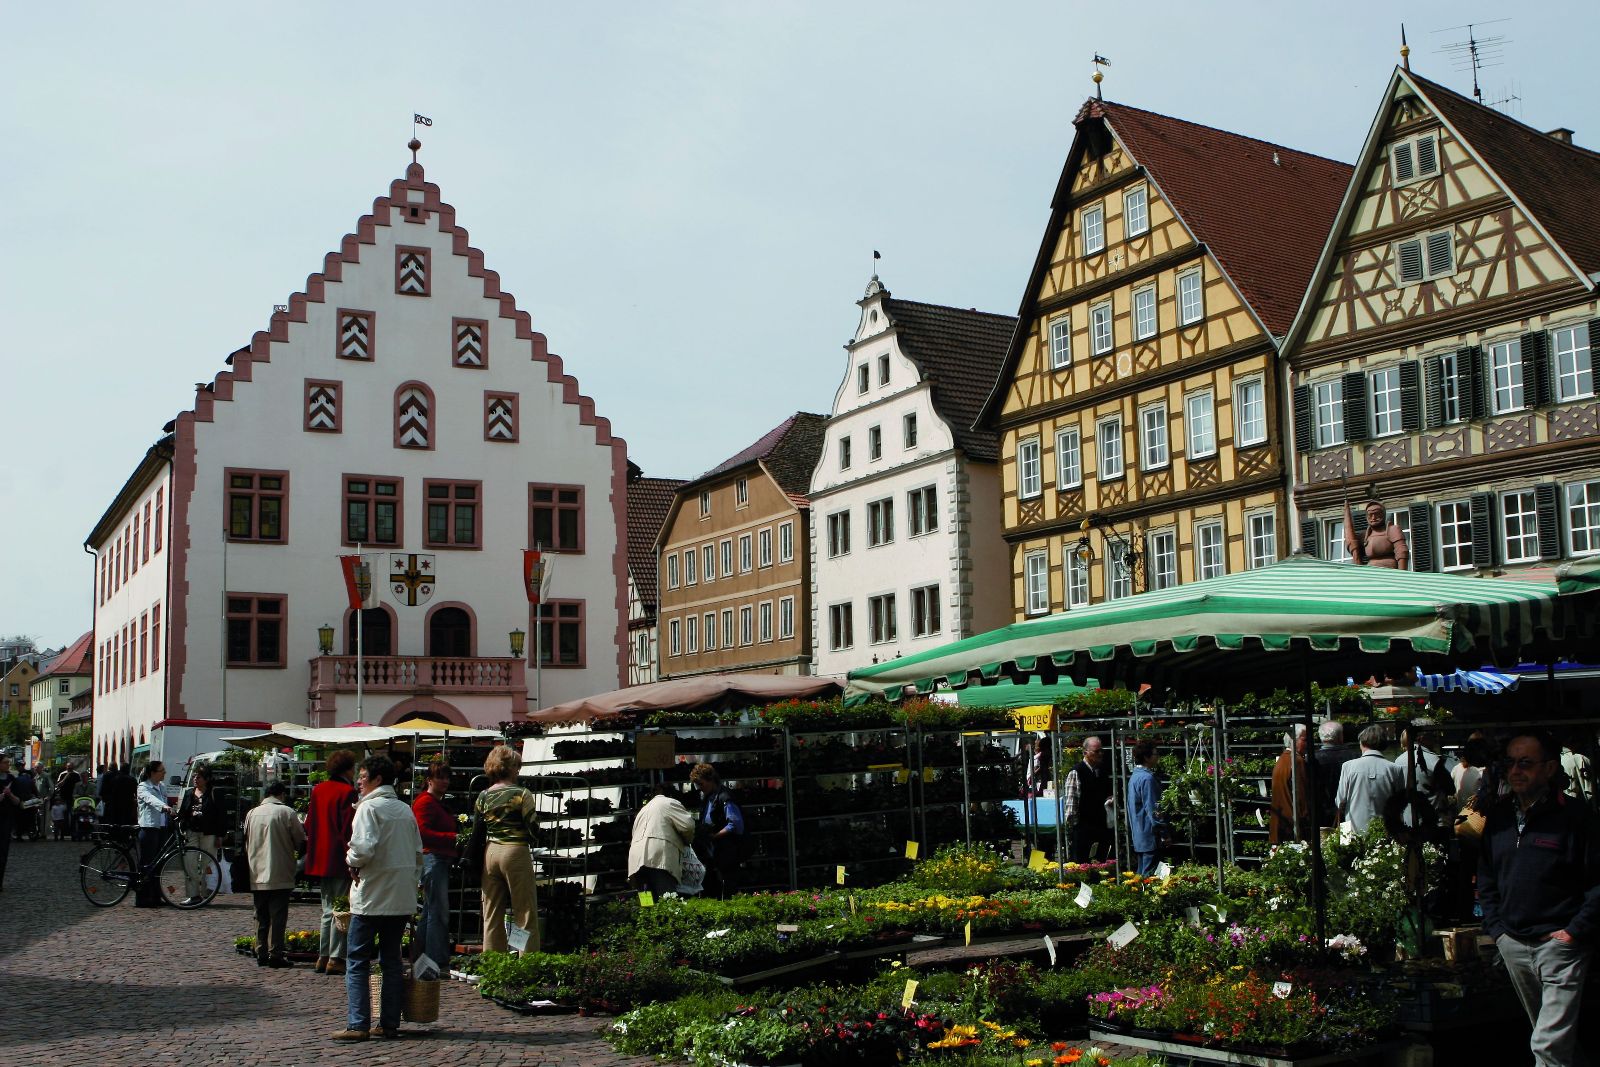 Marktplatz mit dem Wochenmarkt (jeden Dienstag und Freitag von 07:30 bis 13:30 Uhr) in Bad Mergentheim.
